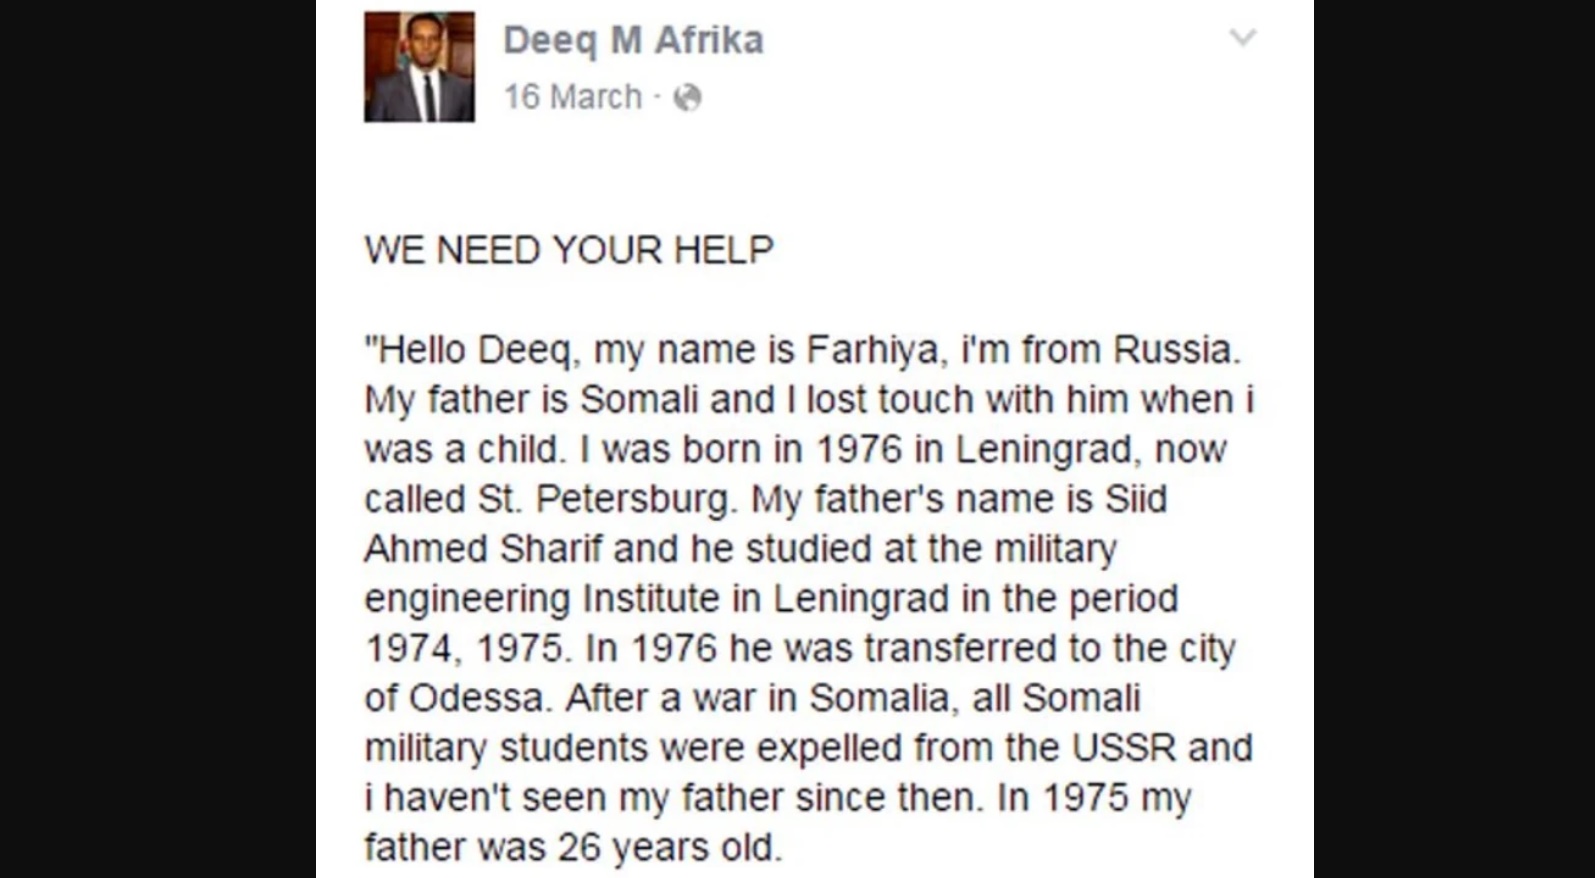 După 40 de ani de căutări, și-a găsit tatăl pe Facebook